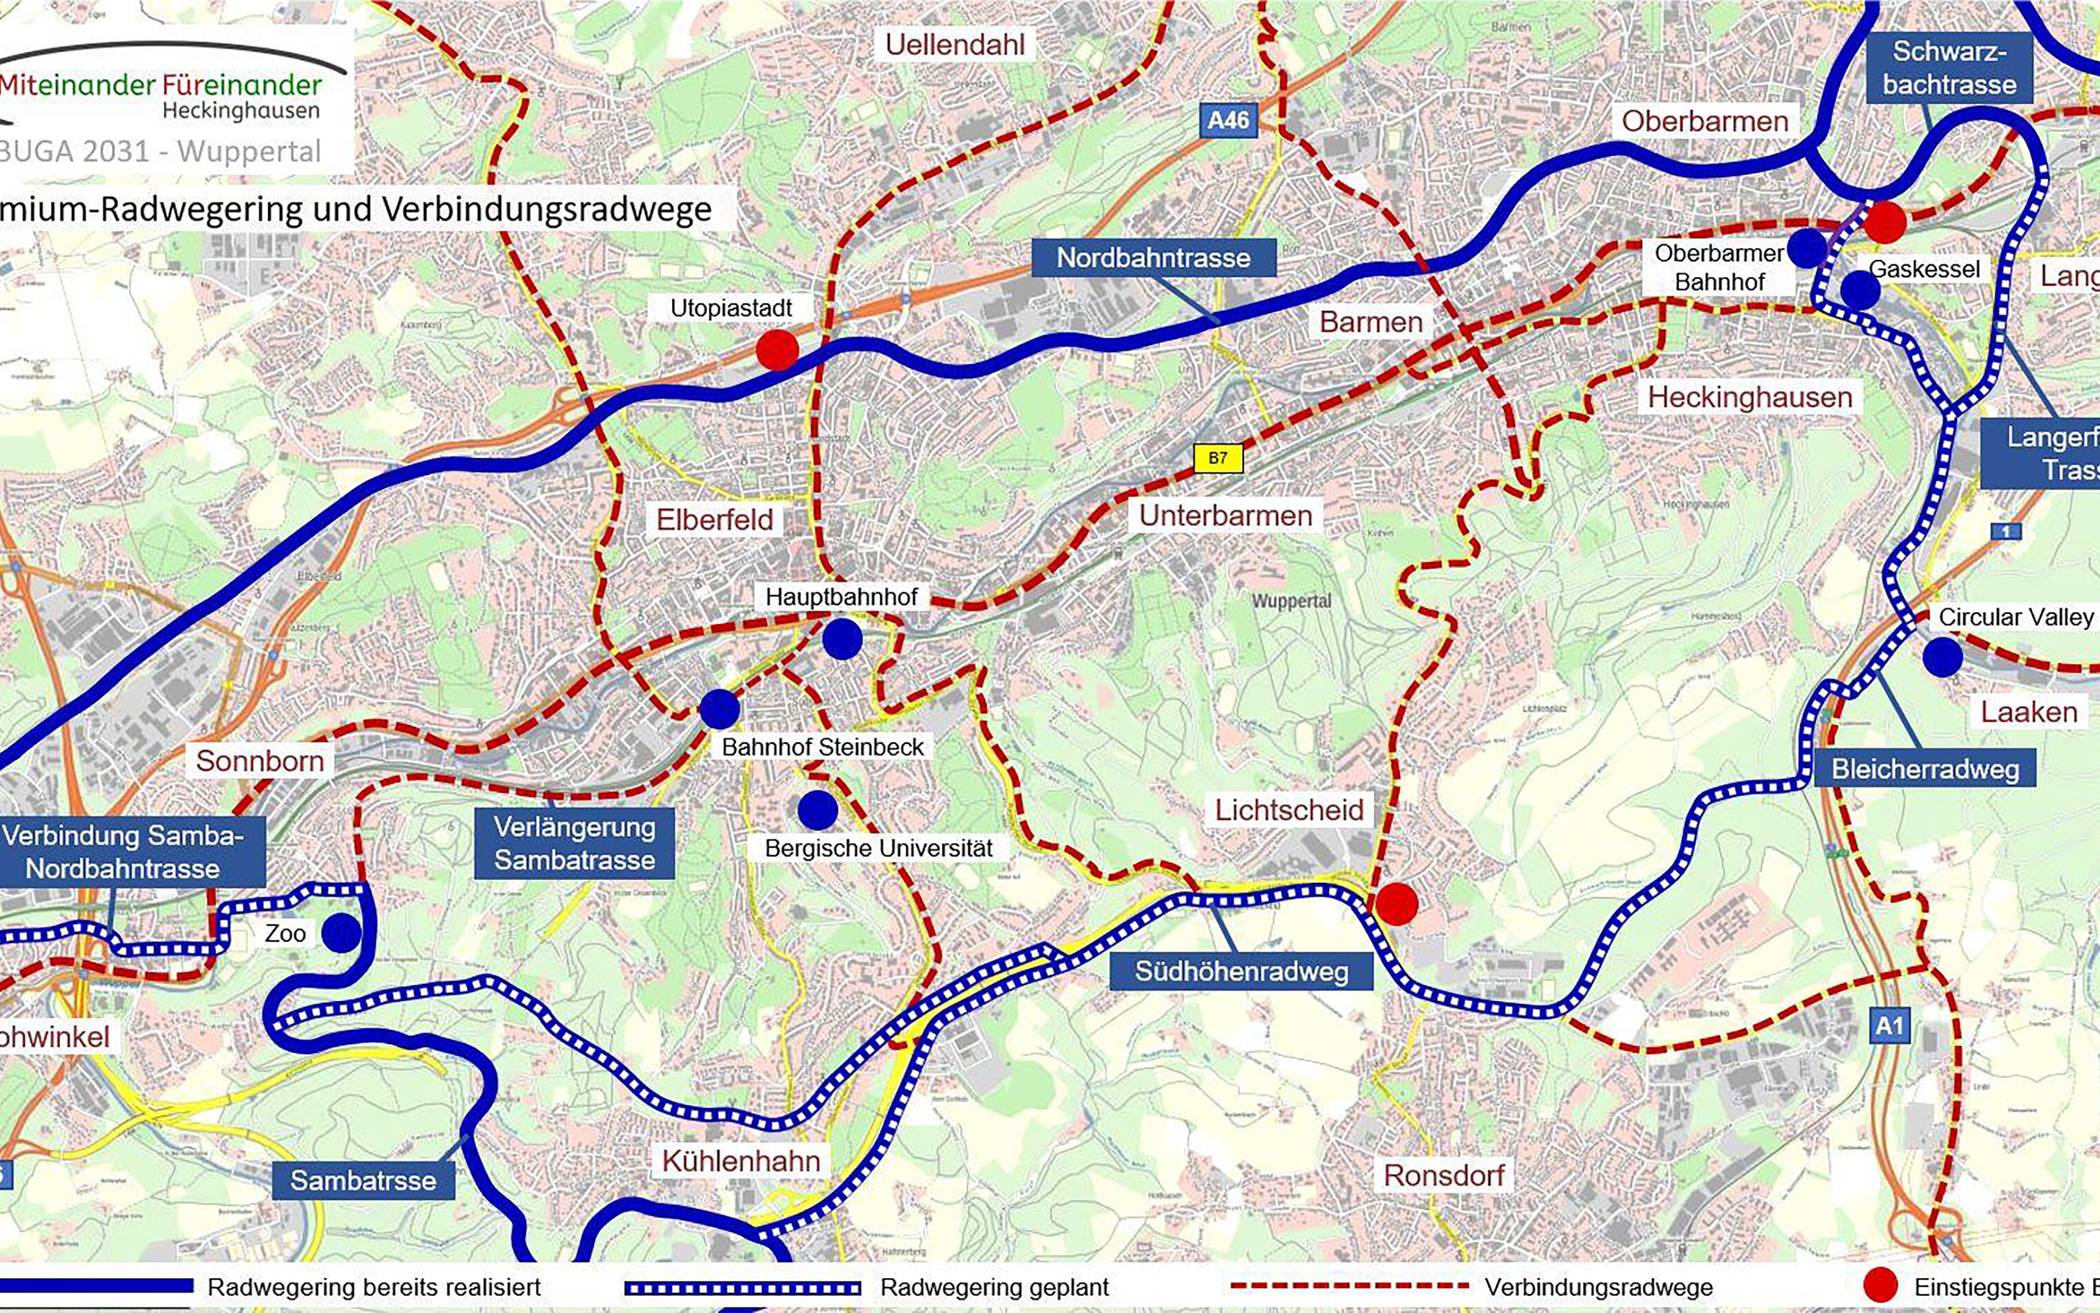  Das Konzept eines Premium-Radwegerings für Wuppertal. 